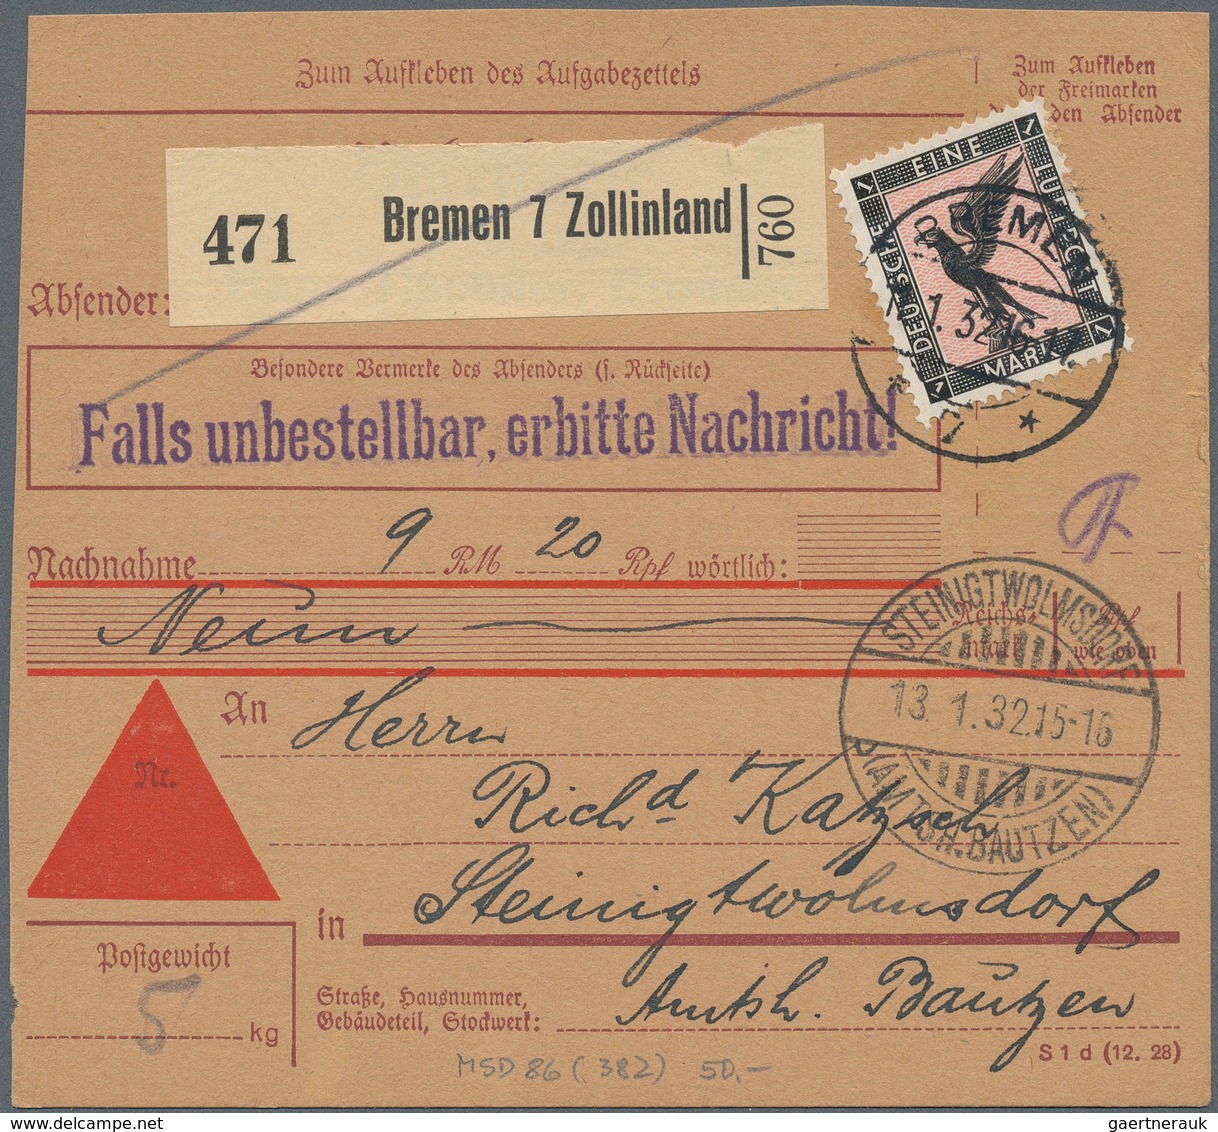 Deutsches Reich: 1881-1945, Paketkarten, Partie mit über 1.000 Exemplaren nach den Tarifen geordnet,